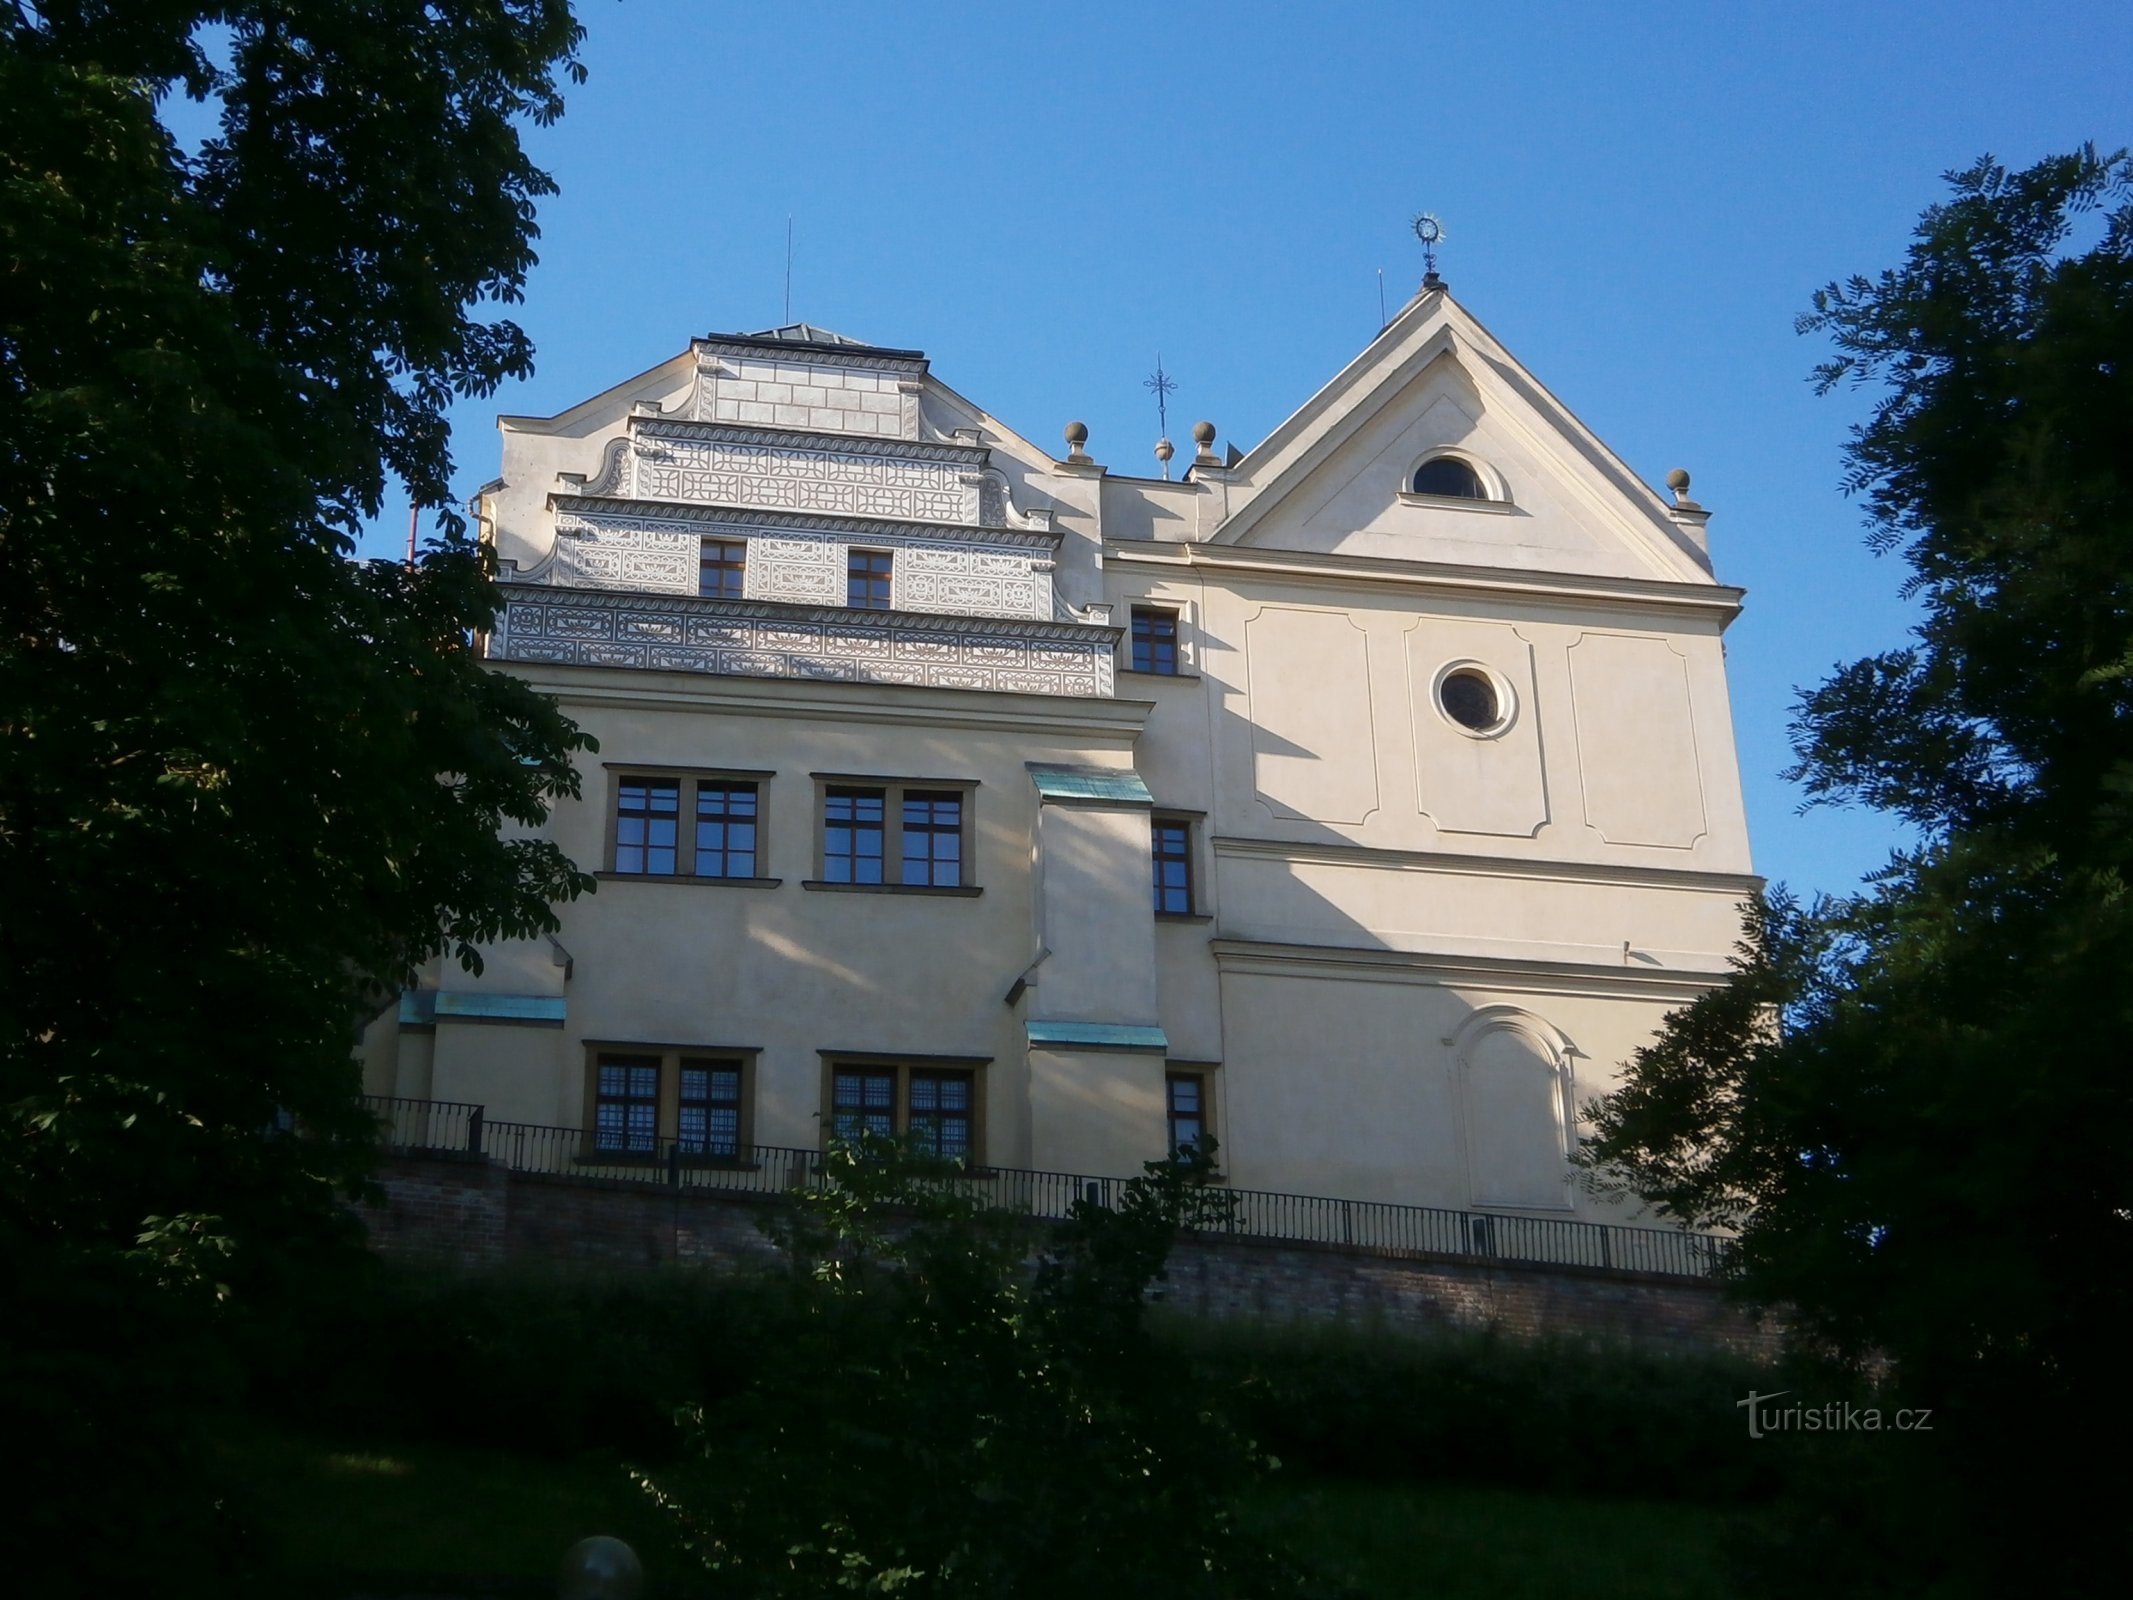 A polgárőr háza a Szt. templommal. Nepomuck János (Hradec Králové, 2.7.2016. július XNUMX.)